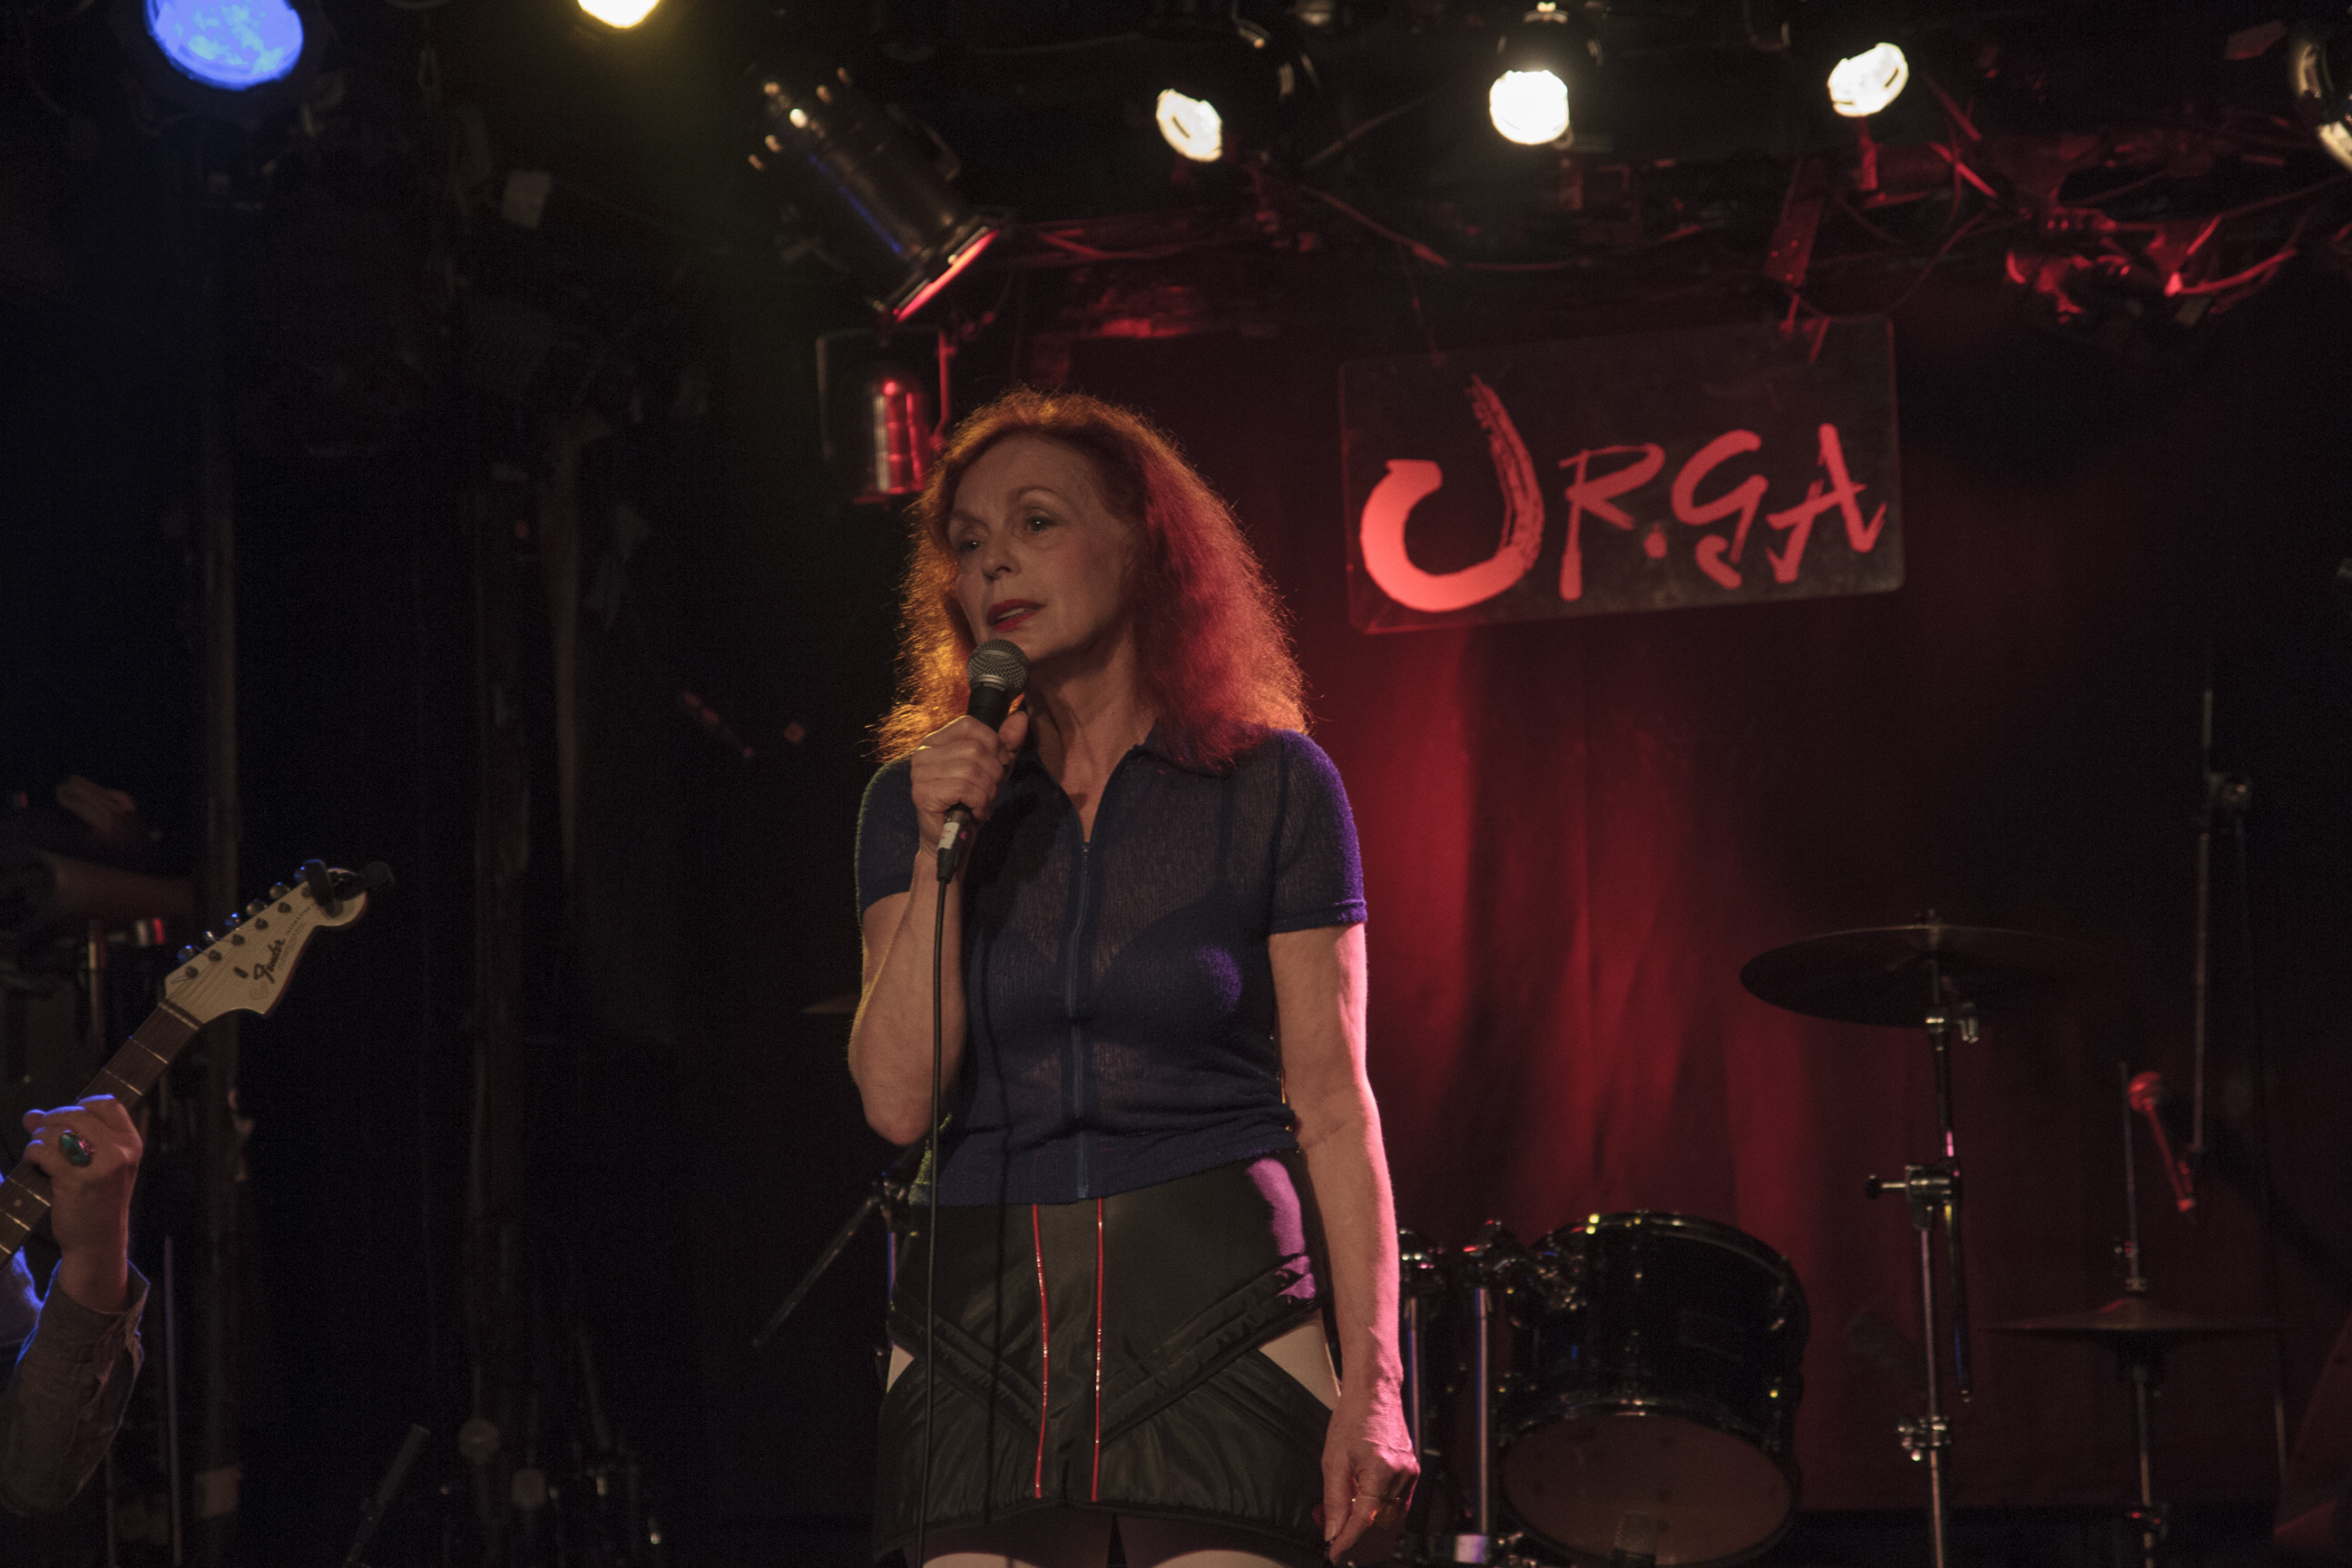 Iris Karina performs at Club URGA in Tokyo